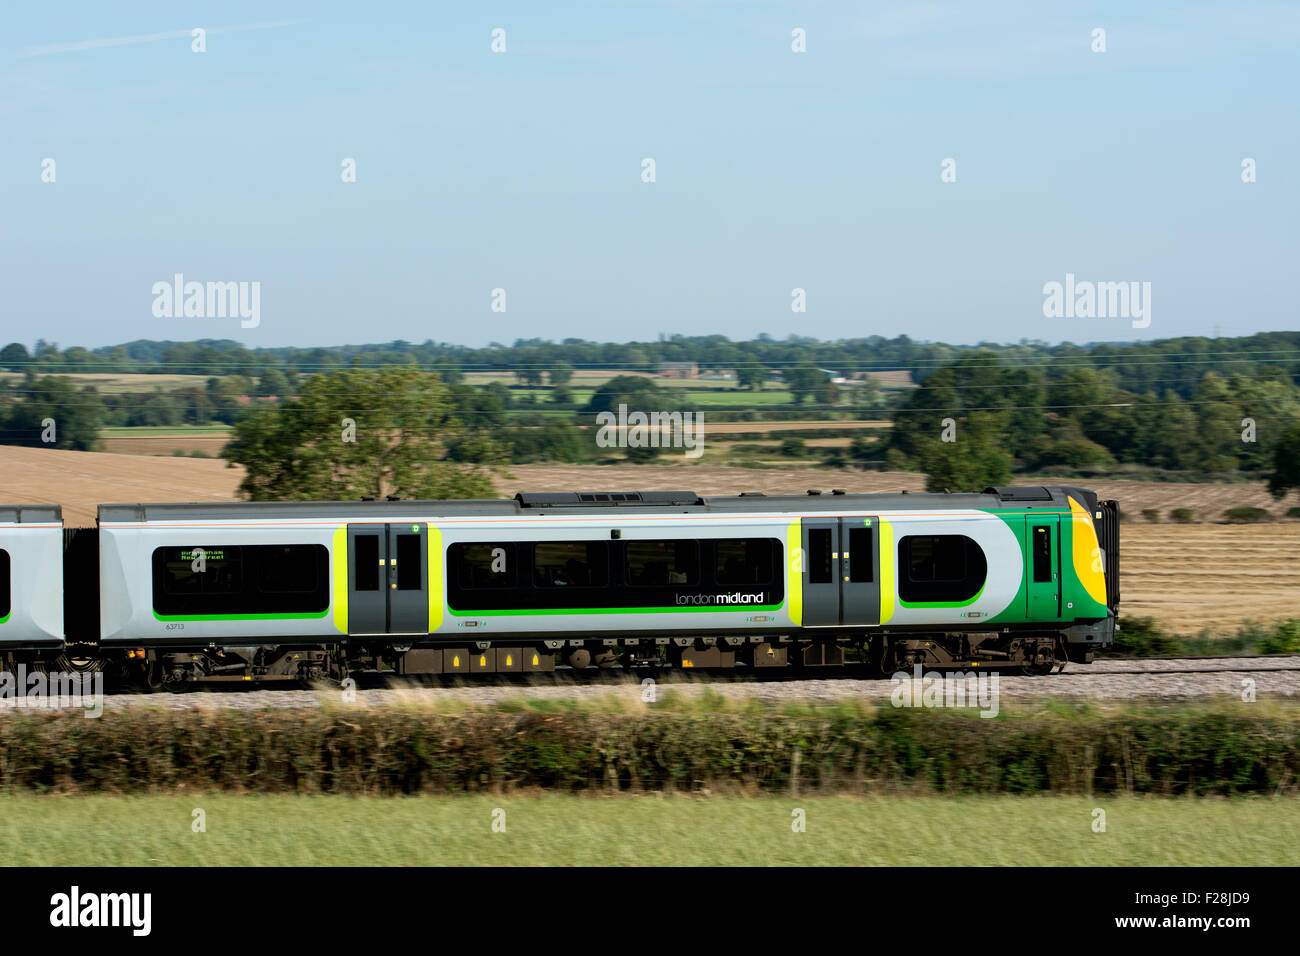 London Midland train électrique à grande vitesse, Warwickshire, UK Banque D'Images